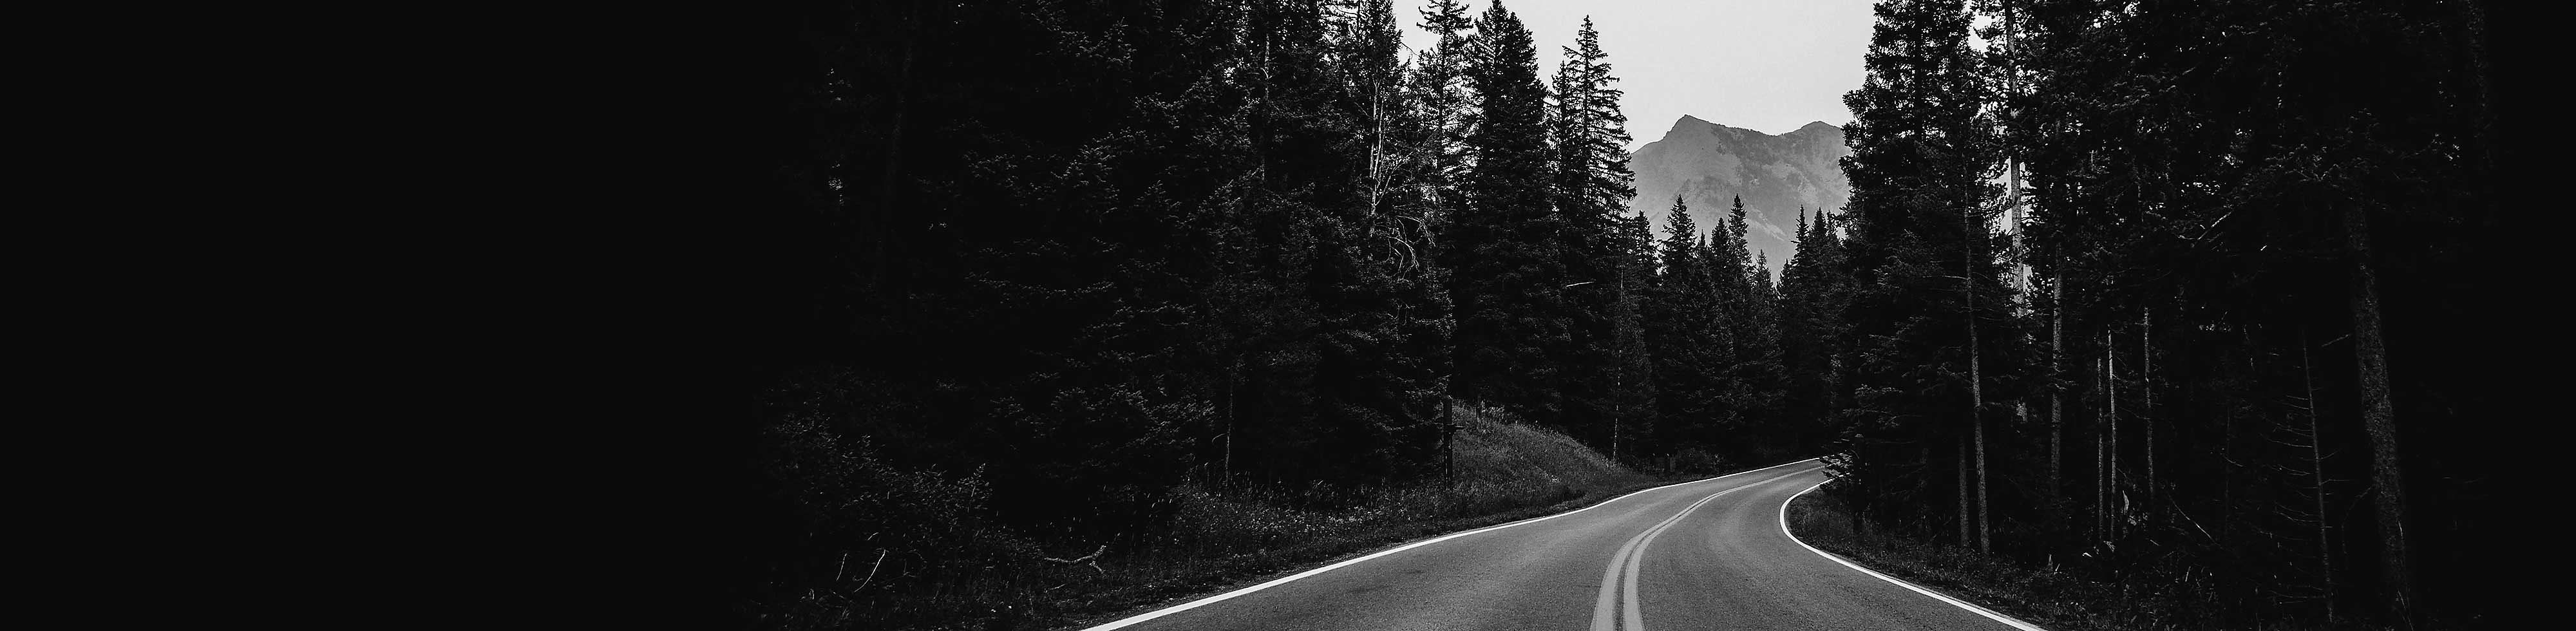 Ασπρόμαυρη εικόνα στην οποία βλέπουμε τη στροφή ενός δρόμου που περιβάλλεται από δέντρα και ένα βουνό στο φόντο